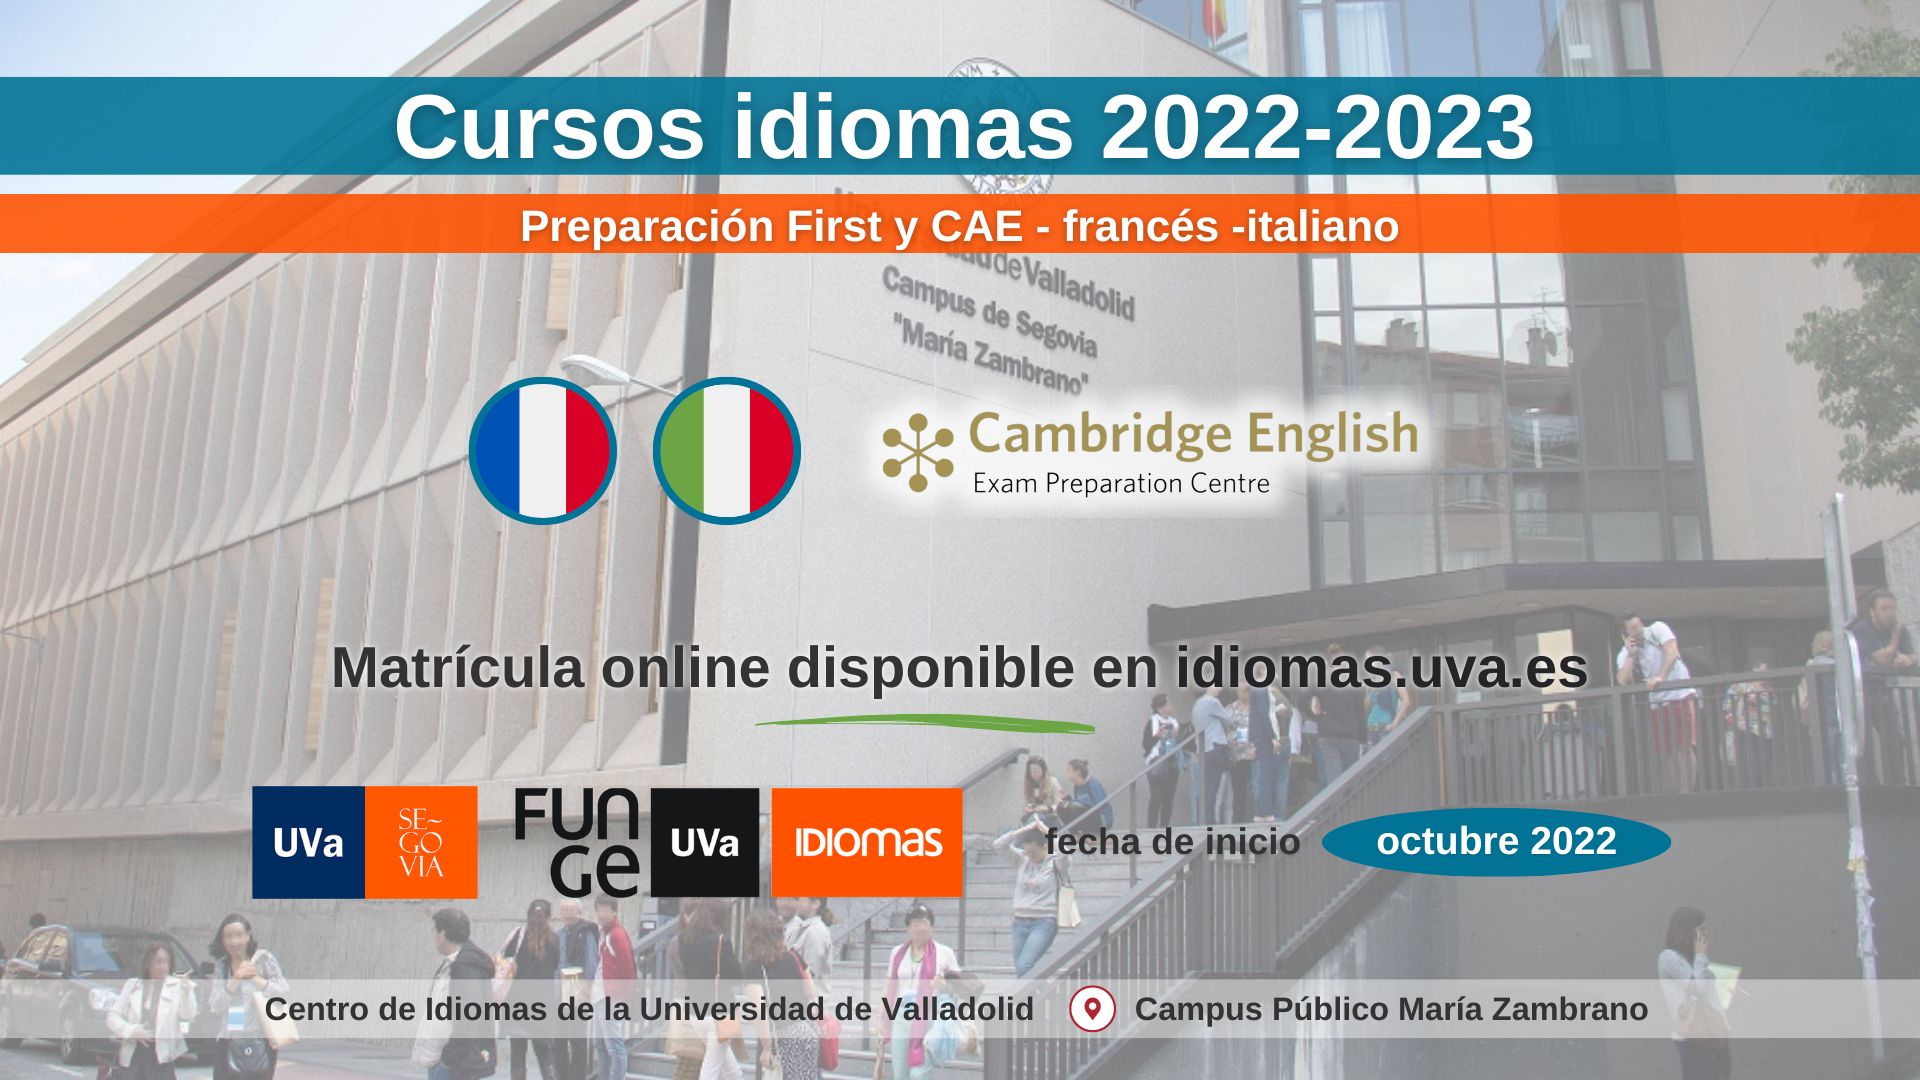 Facebook preparacion First y CertACLES Campus de Segovia Centro de Idiomas UVa 22 23